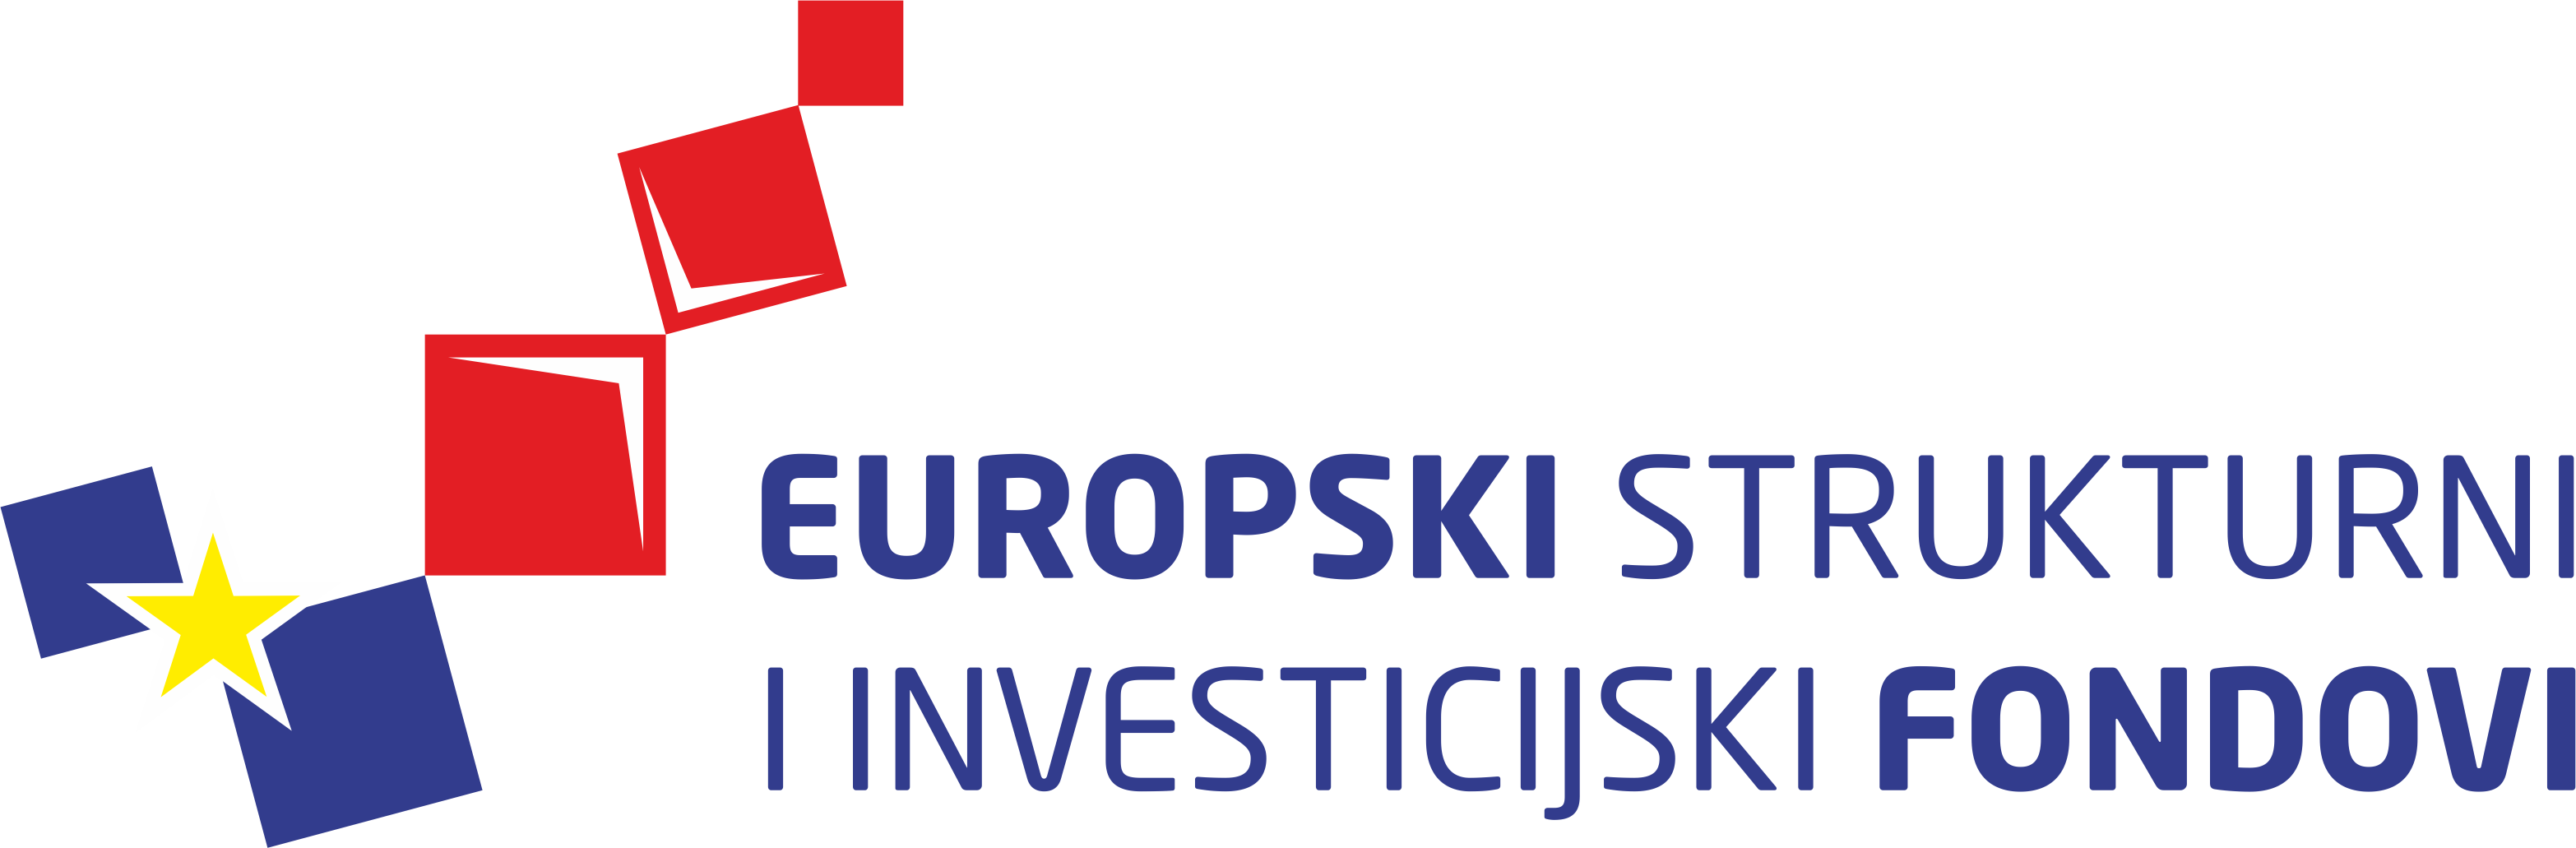 Europski strukturni i investicijski fondovi logo